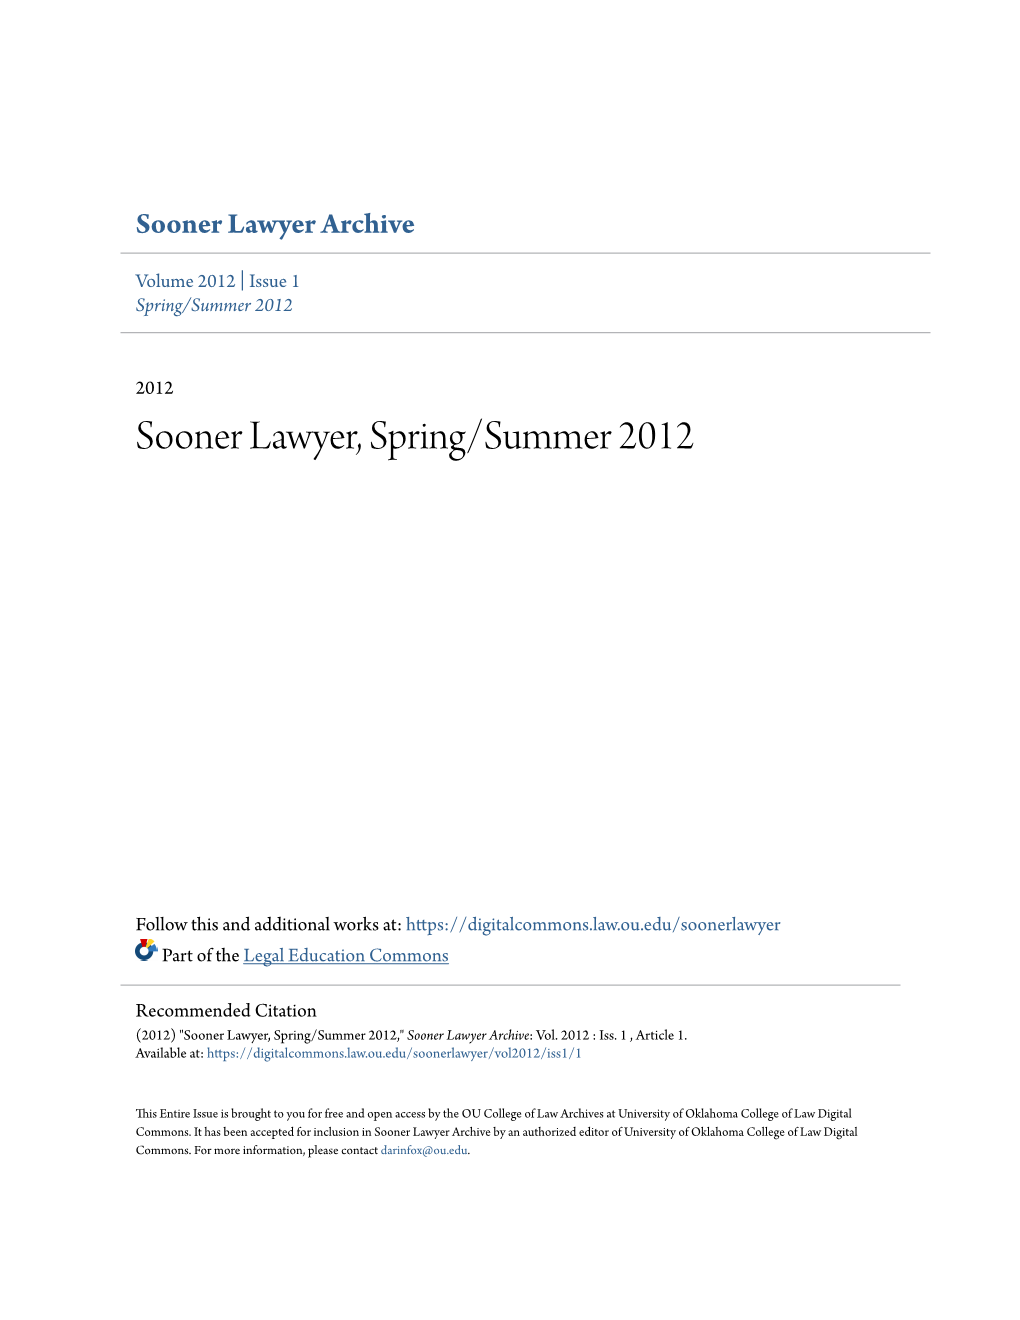 Sooner Lawyer, Spring/Summer 2012